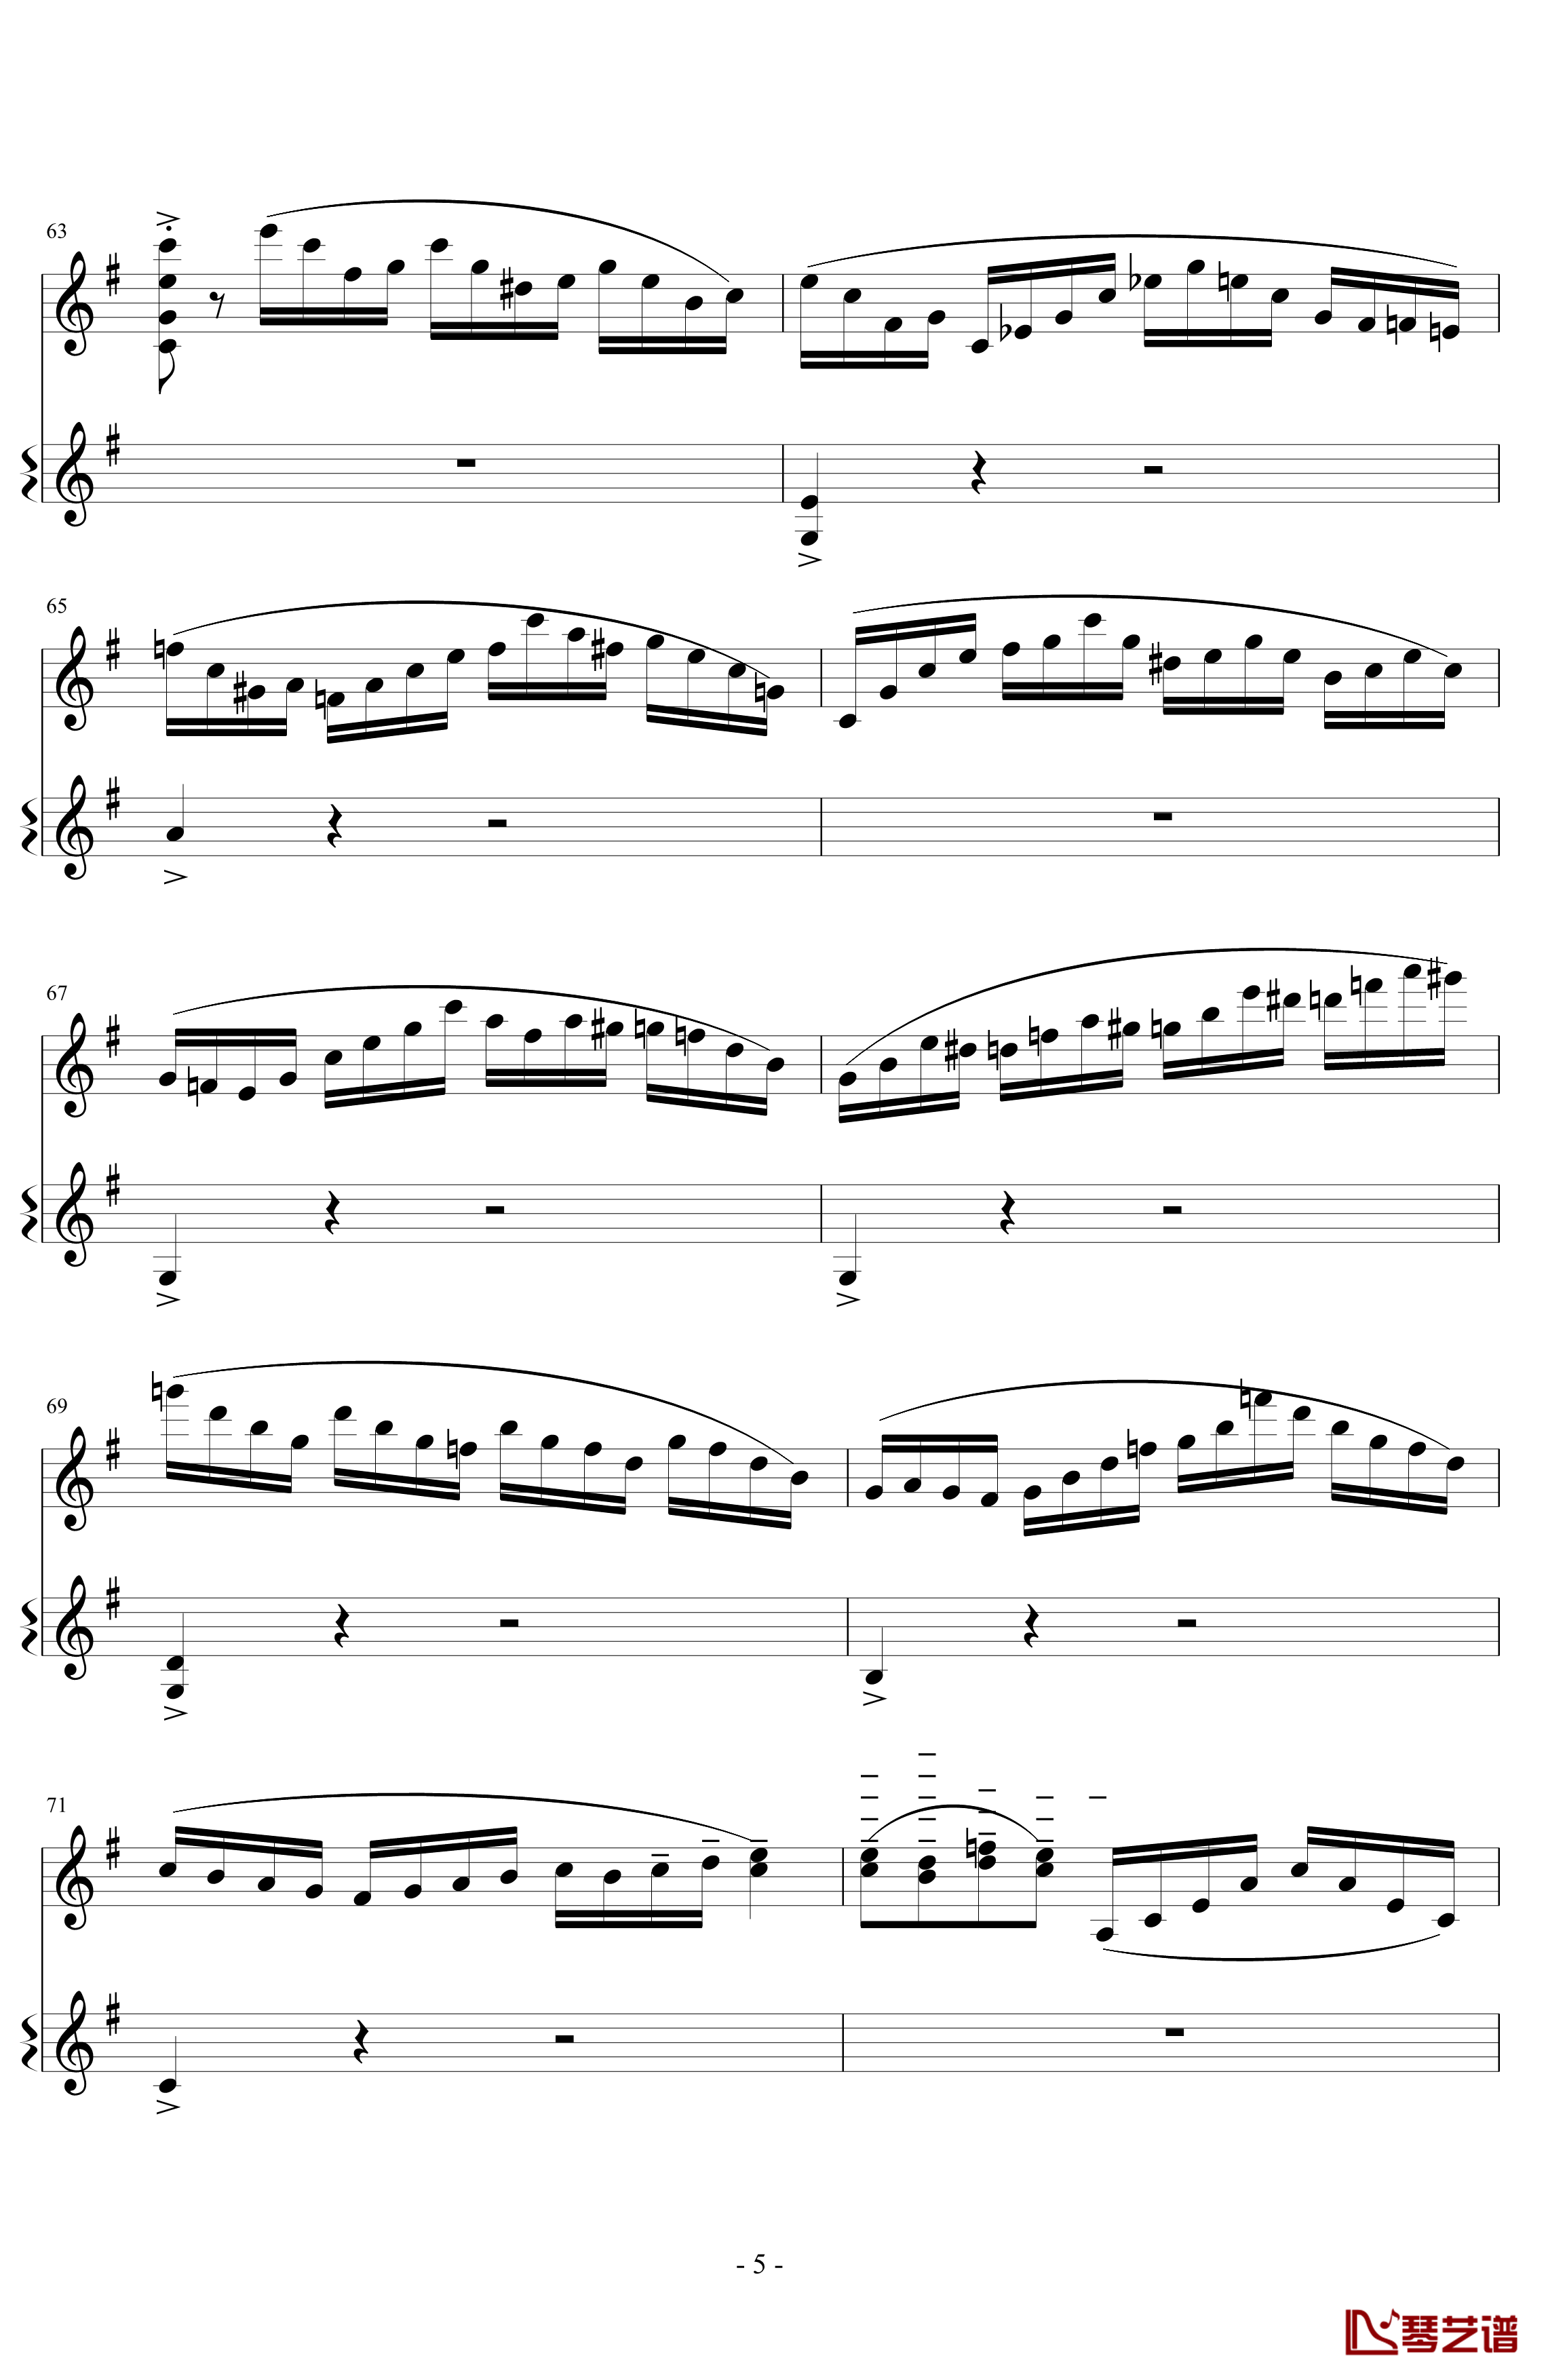 意大利国歌变奏曲钢琴谱-DXF5